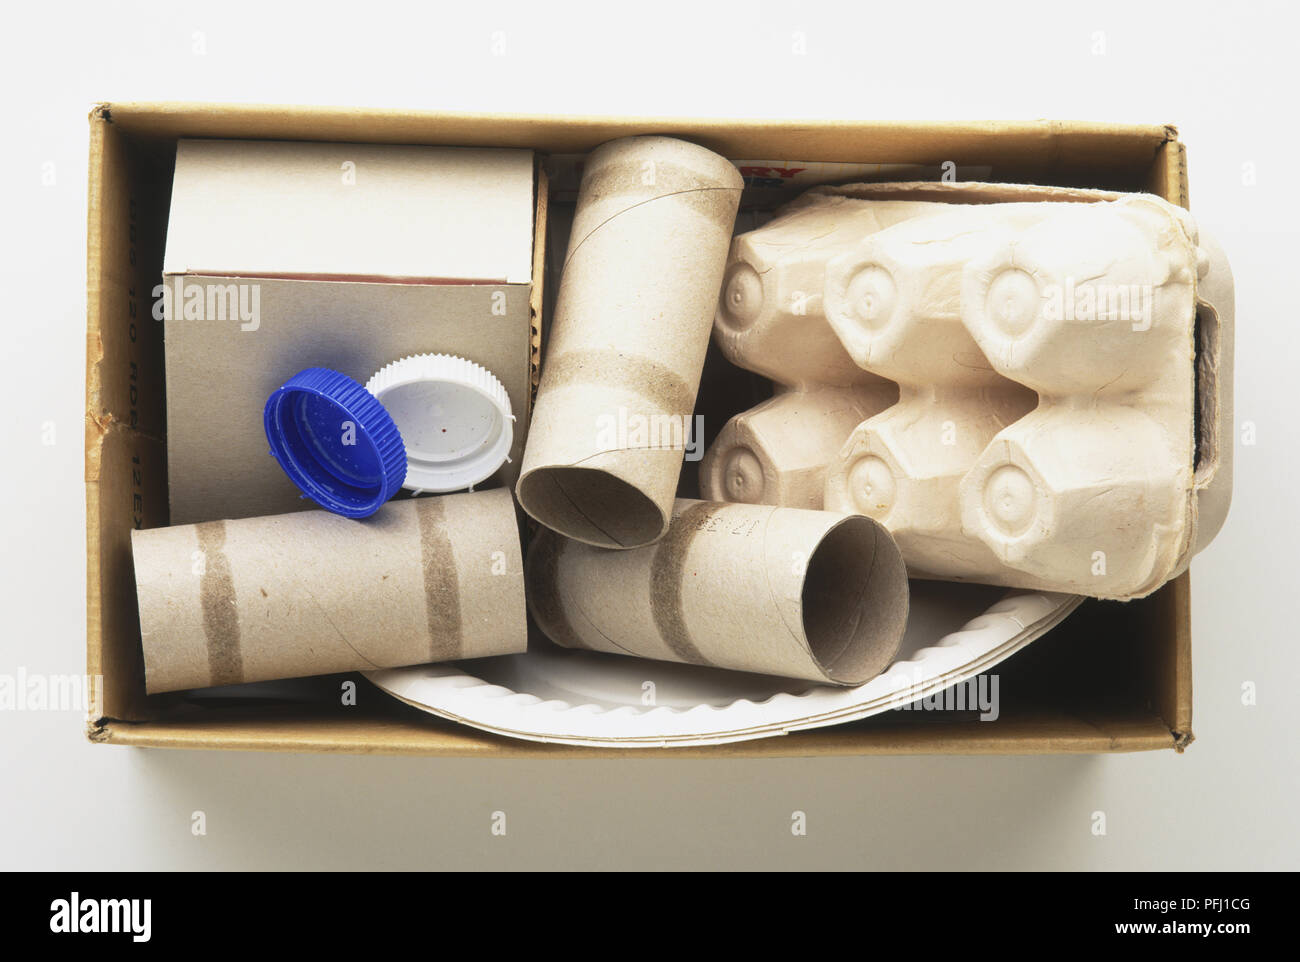 Casella di uovo, tubi di cartone, piastre di carta, coperchi in plastica in una scatola, vista da sopra Foto Stock